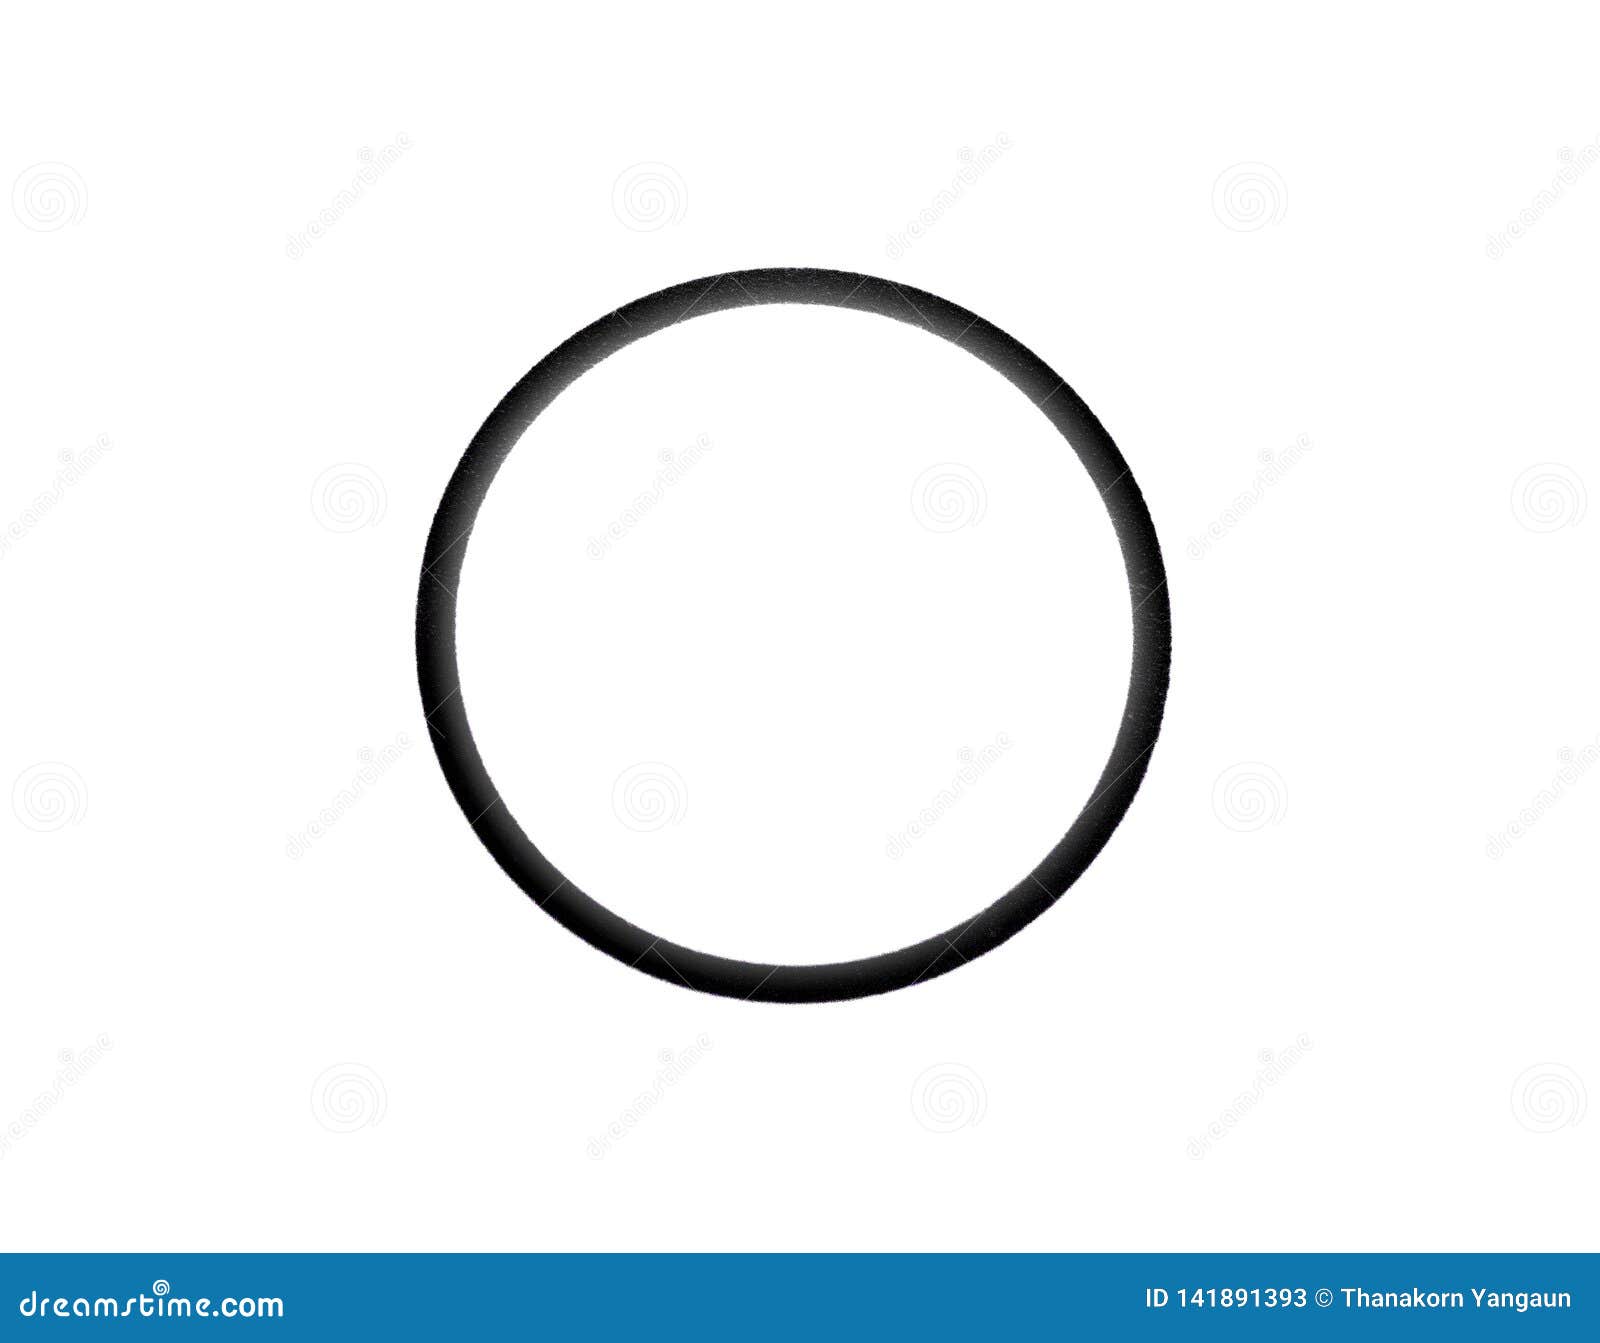 Big Circle on White Background. Stock Image - Image of used, black:  141891393